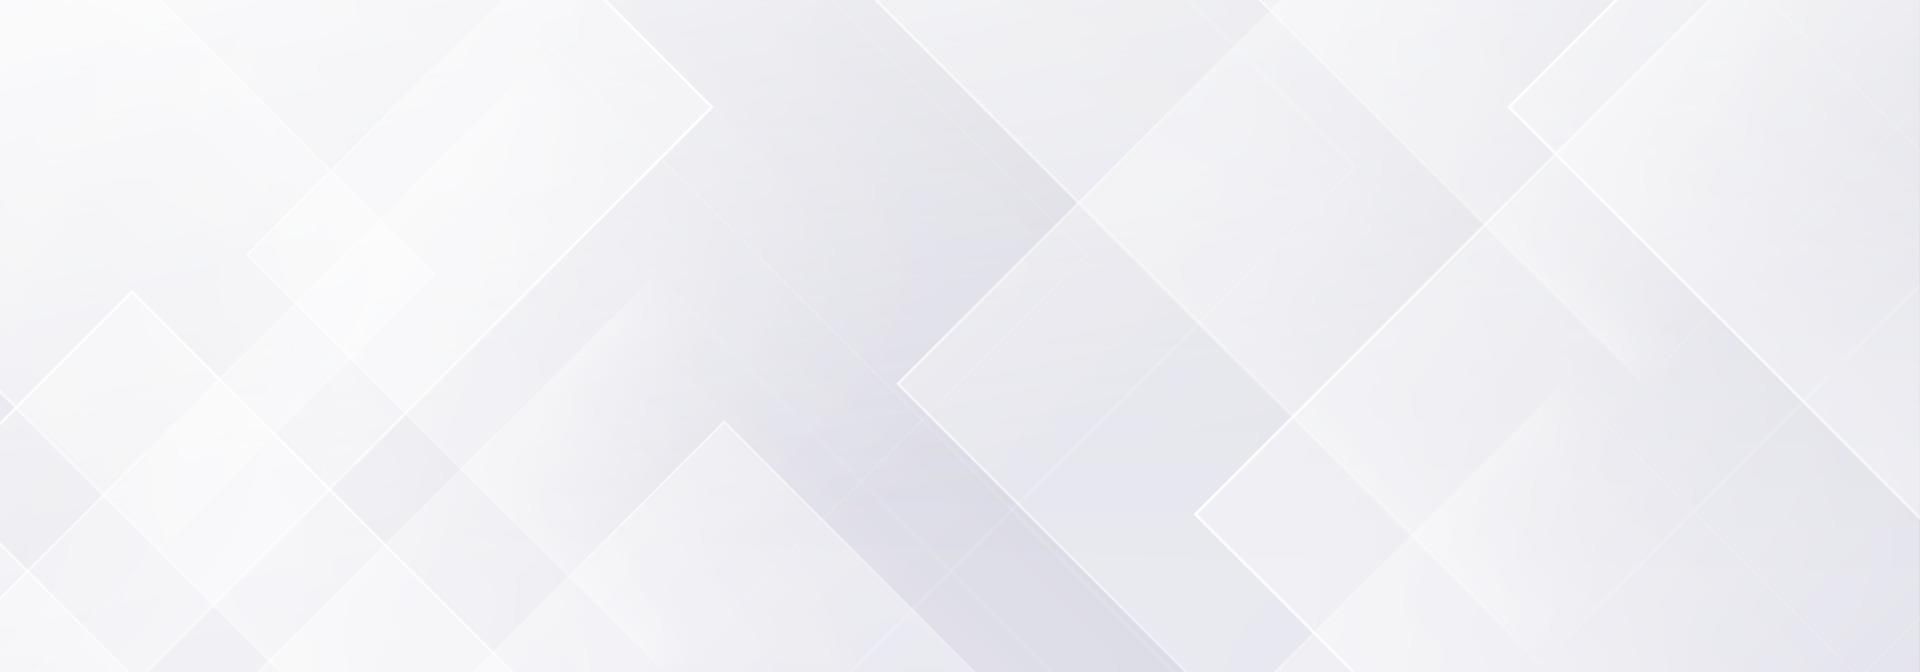 abstrato geométrico branco e cinza sobre fundo gradiente prata claro. design de bandeira moderna. ilustração vetorial vetor